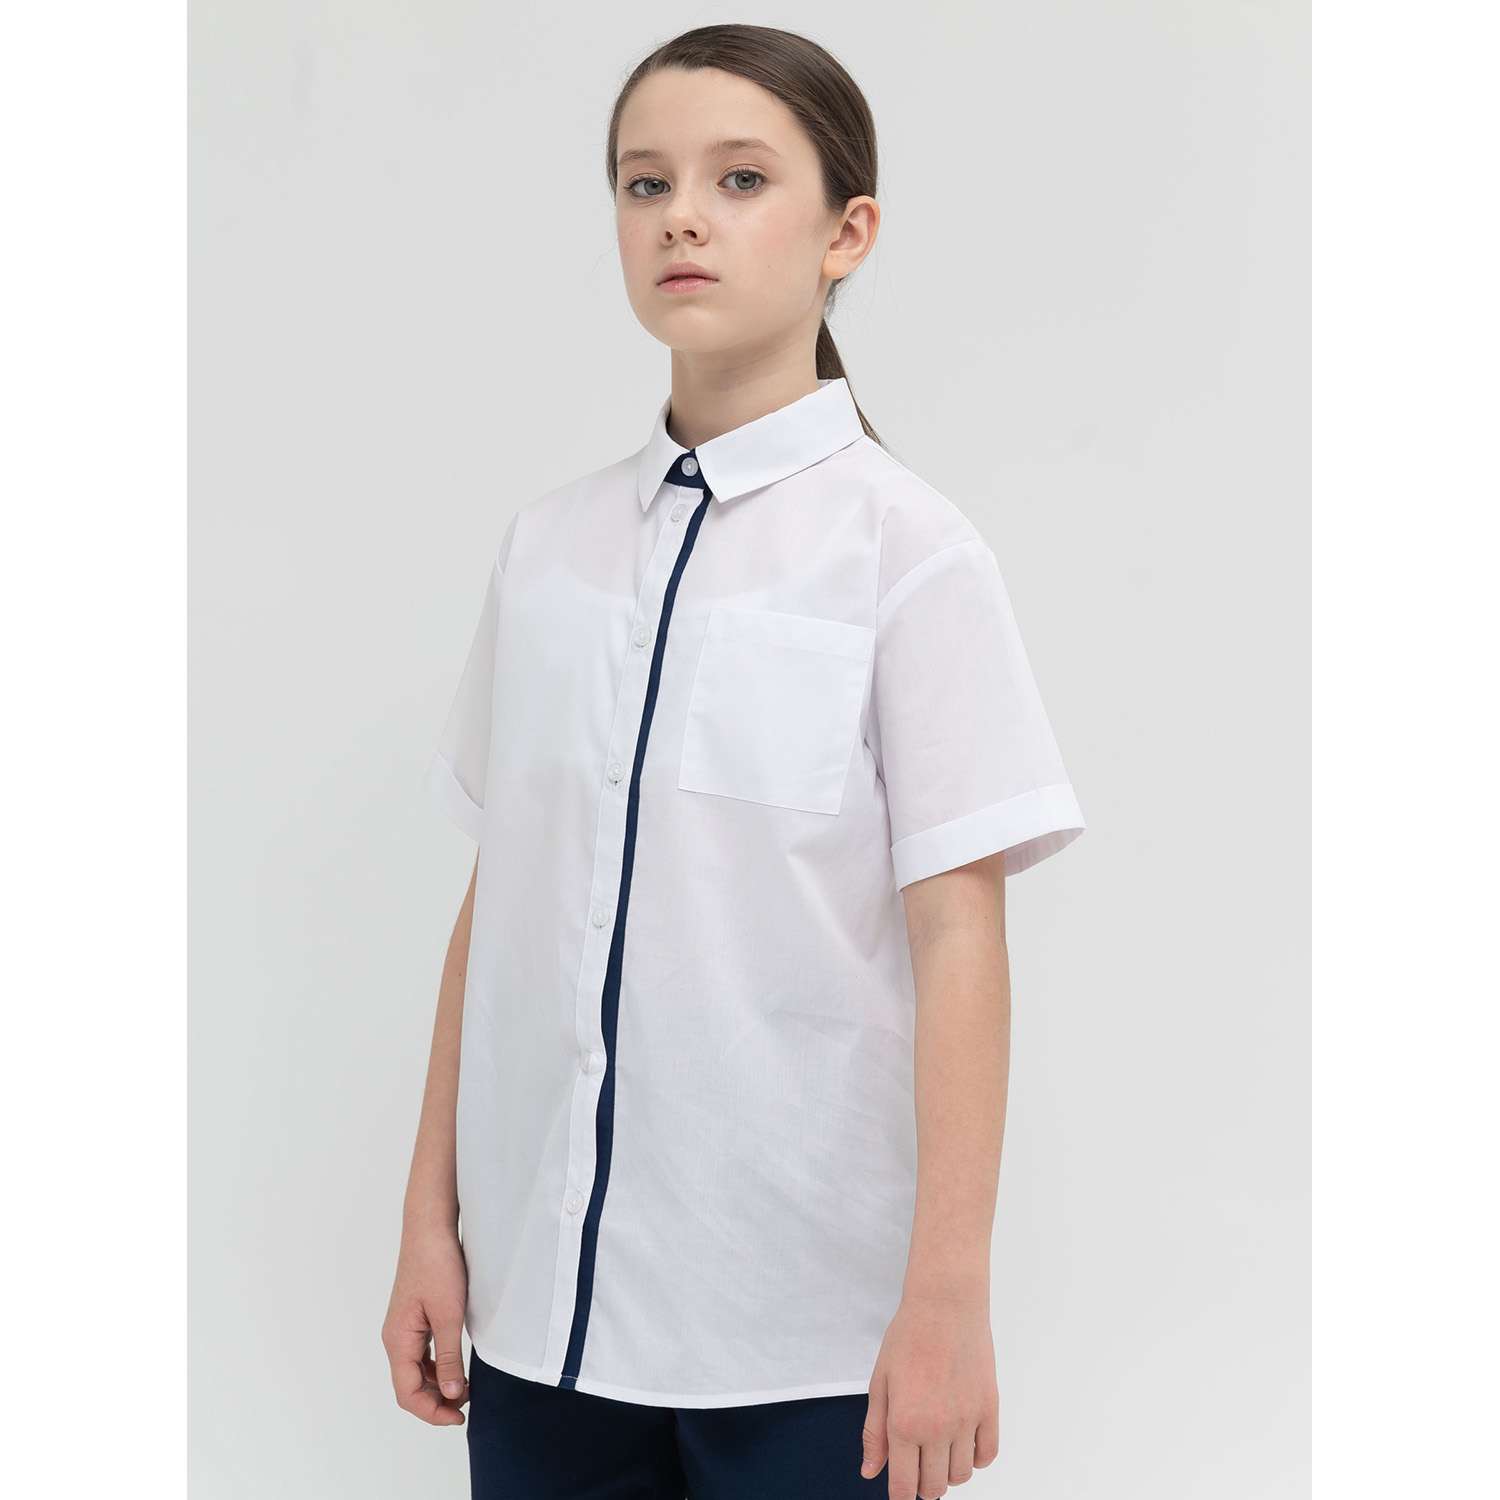 Рубашка PELICAN GWCT8123/Белый(2) - фото 1